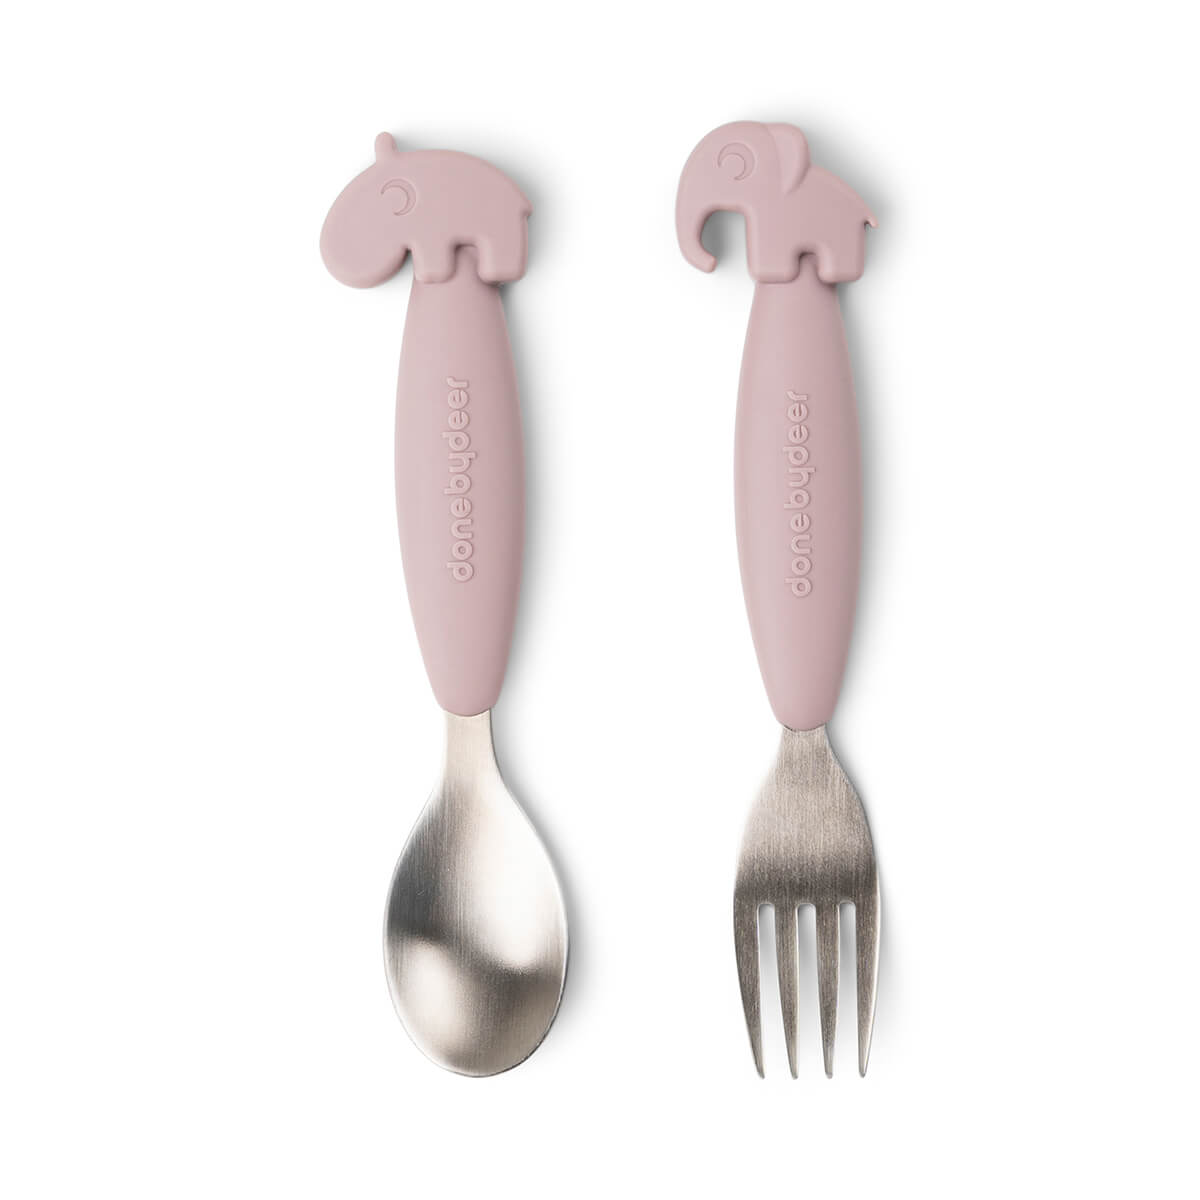 Easy-grip spoon and fork set - Deer friends - Powder